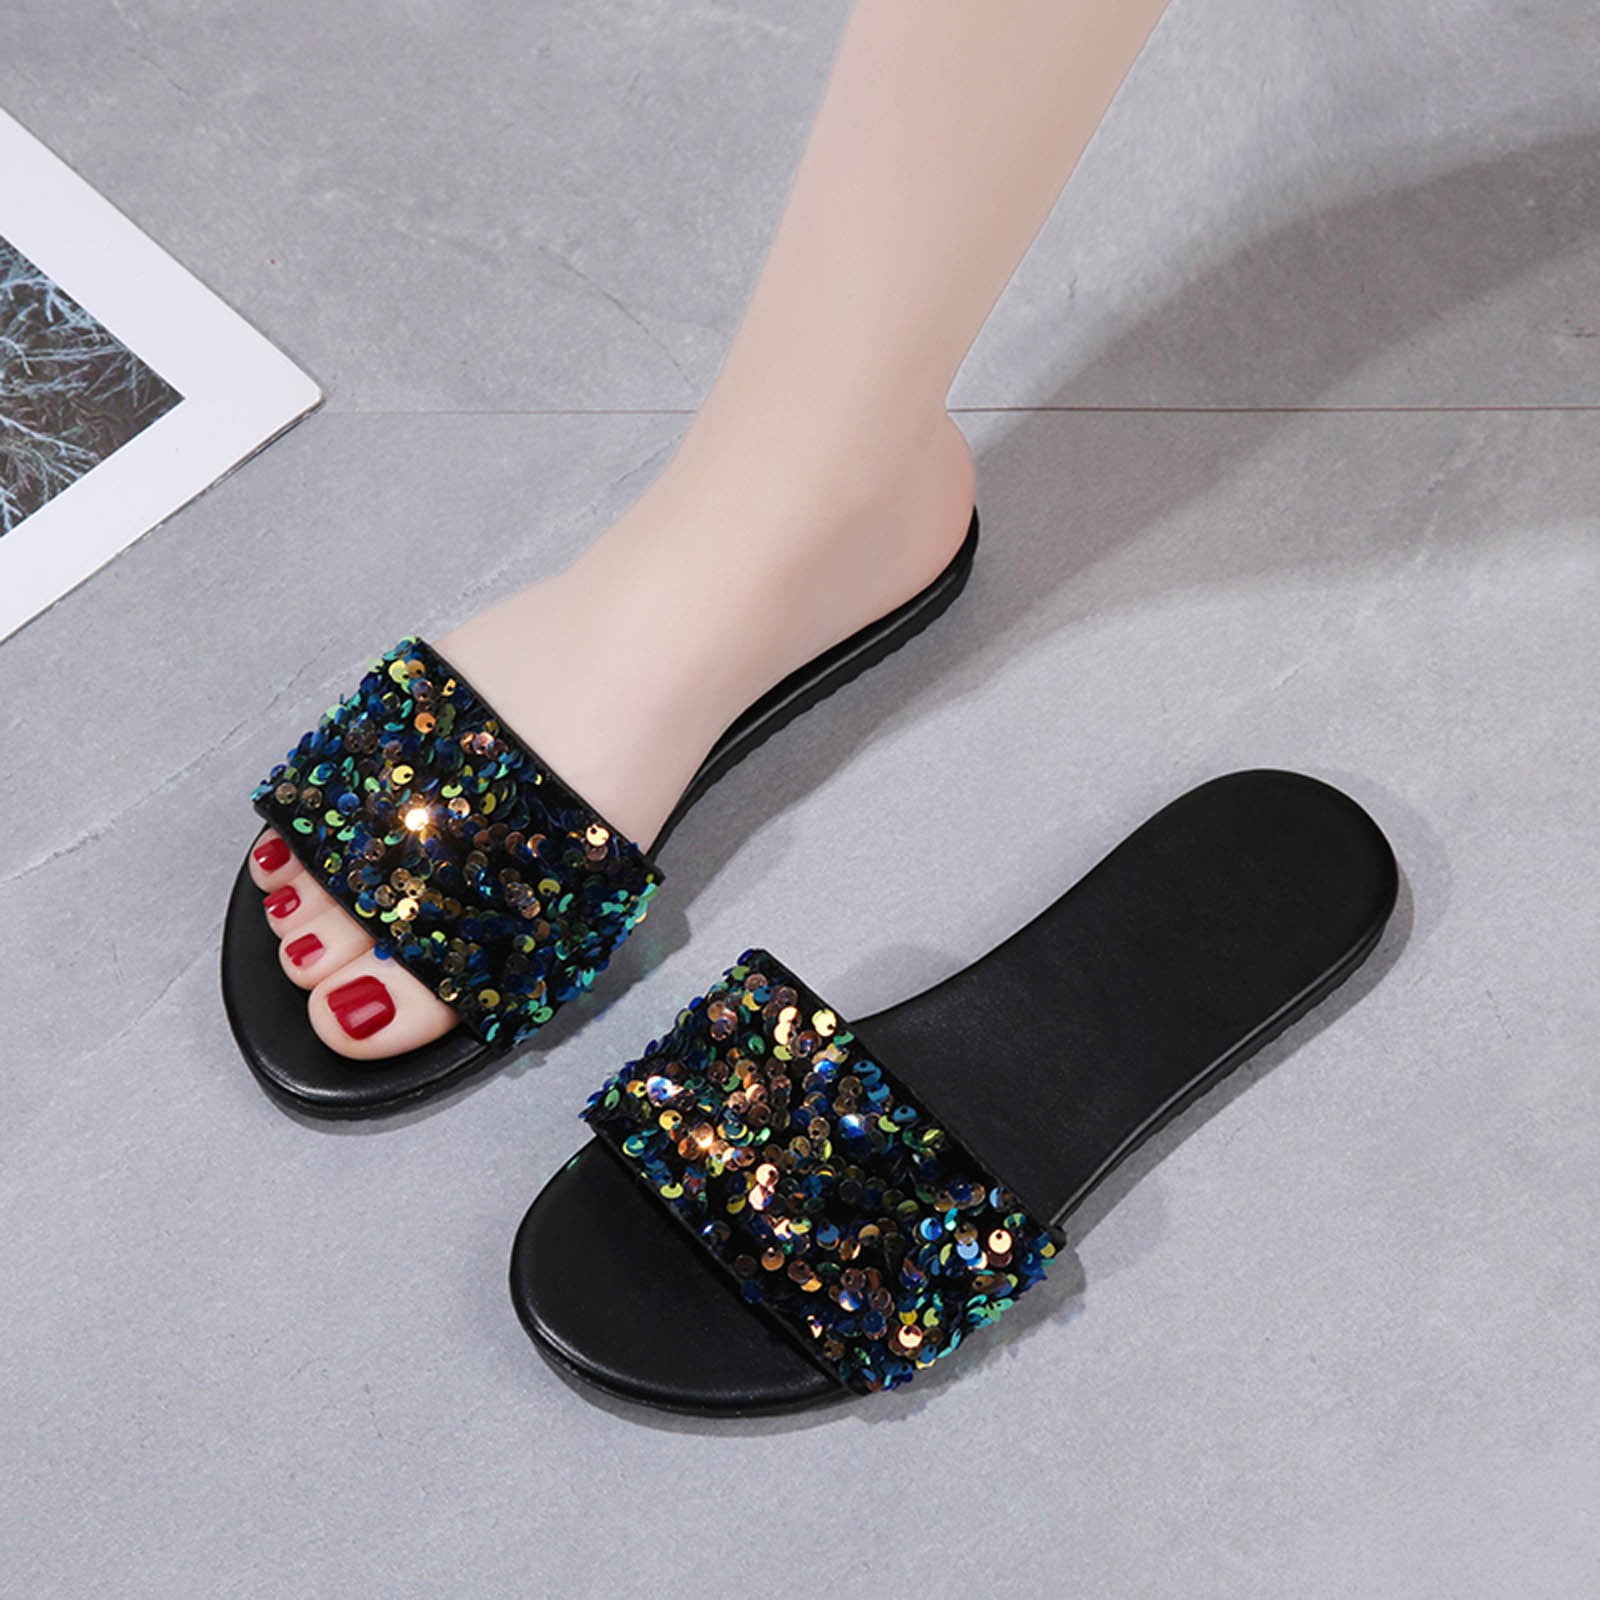 Minimalist Open Toe Sandals